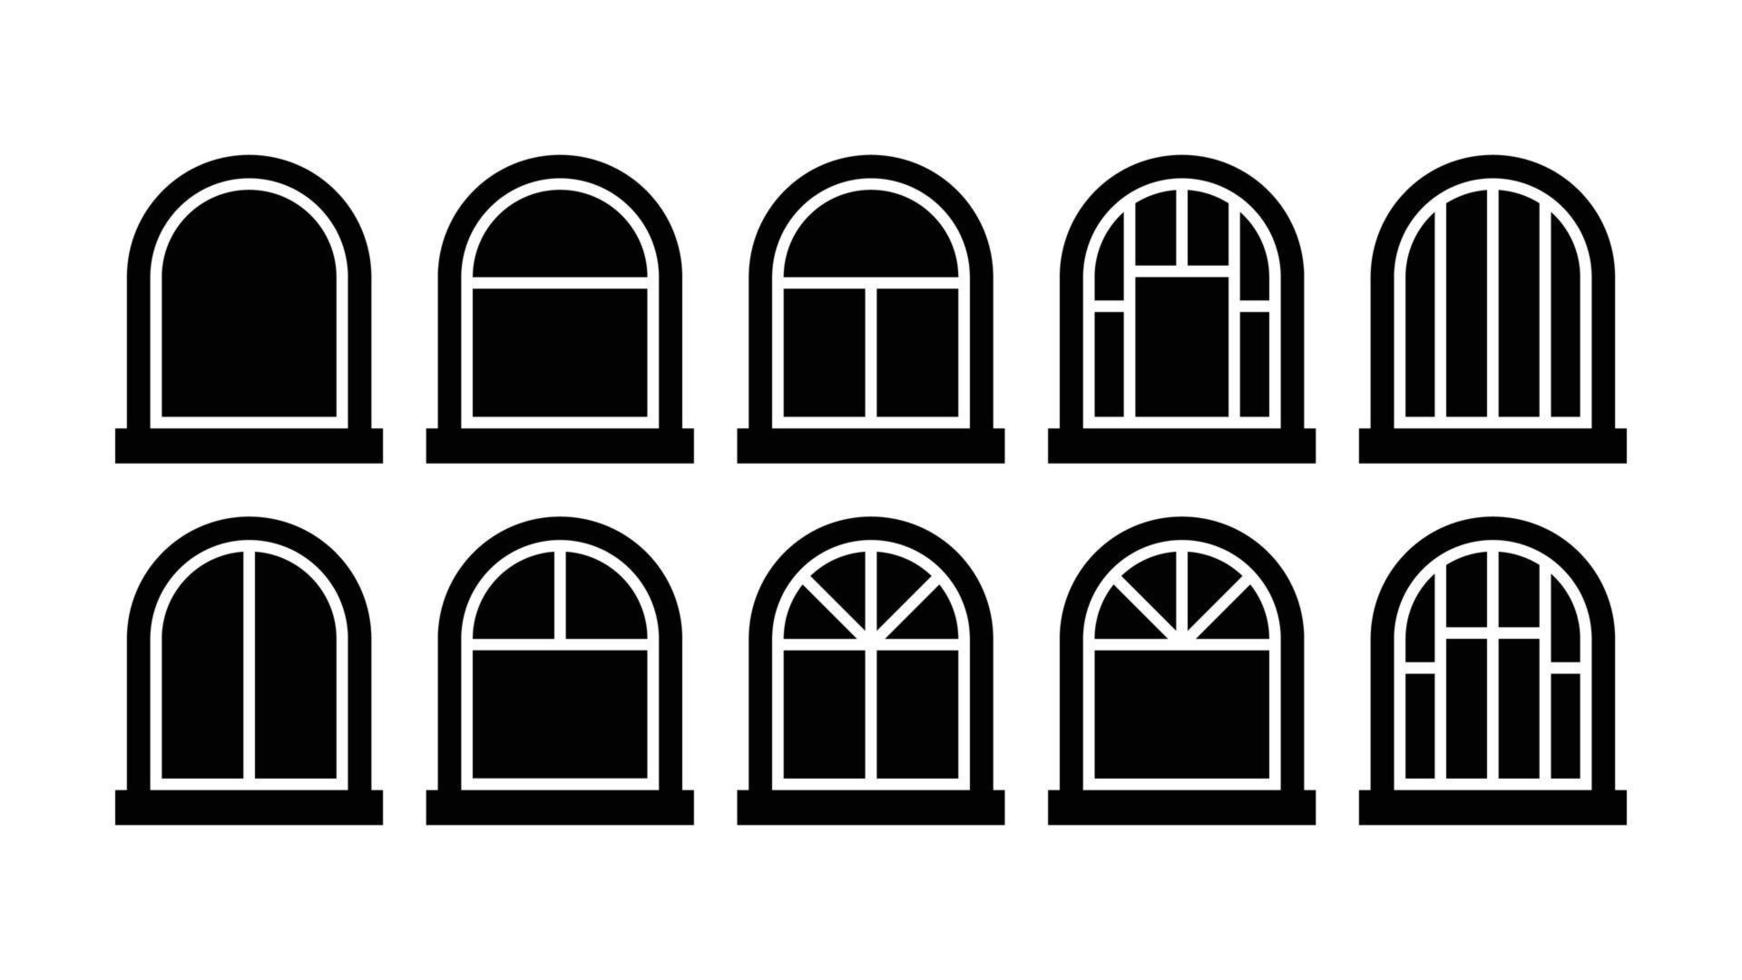 Formsammlung mit zehn Bogenfenstern vektor